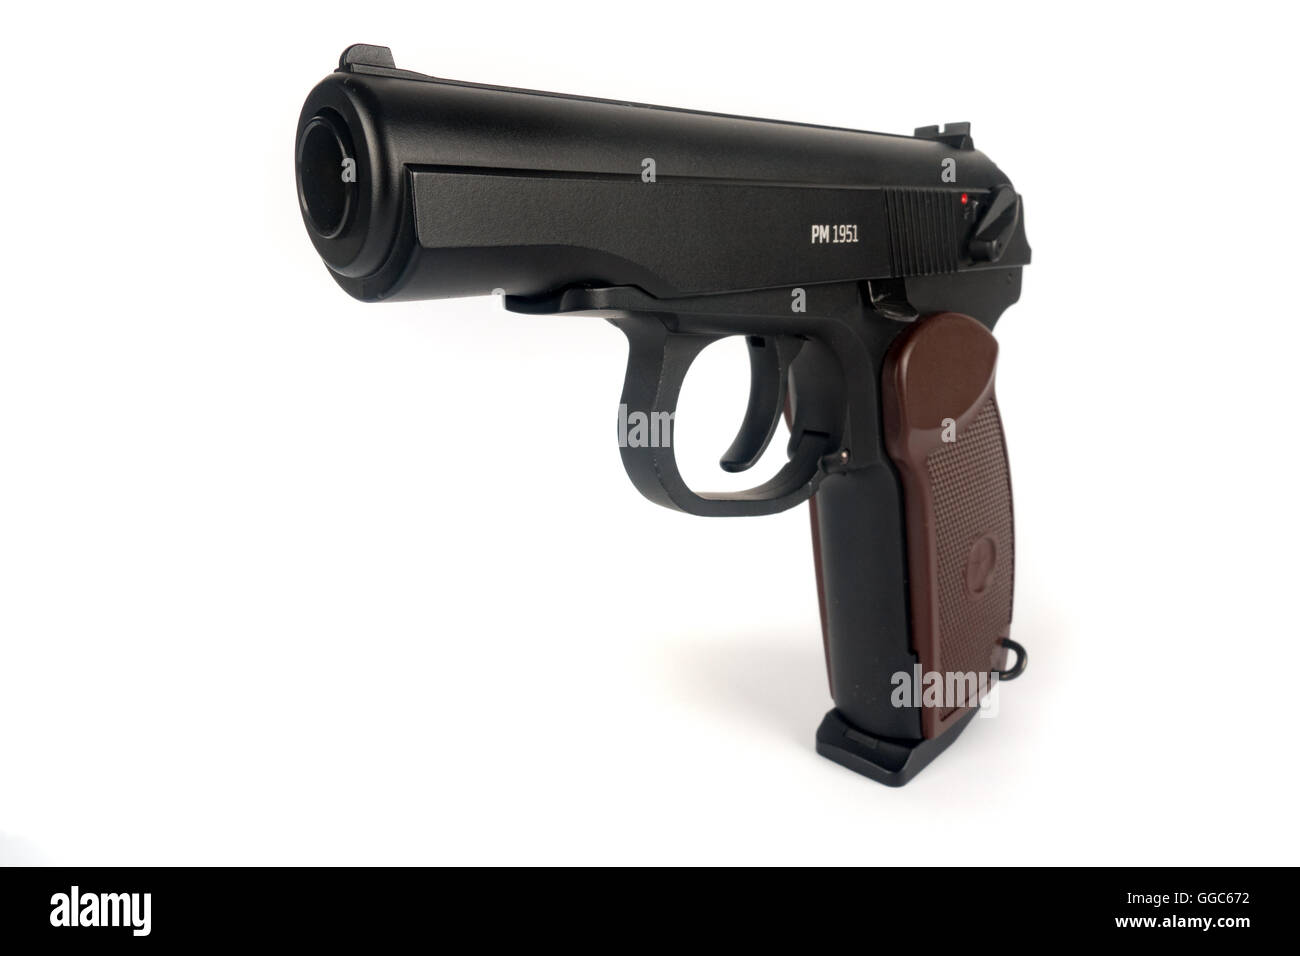 La pistola Makarov o PM es una federación de pistola semi-automática, se convirtió en el estándar de la Unión Soviética, militares y de policía de brazo lateral Foto de stock